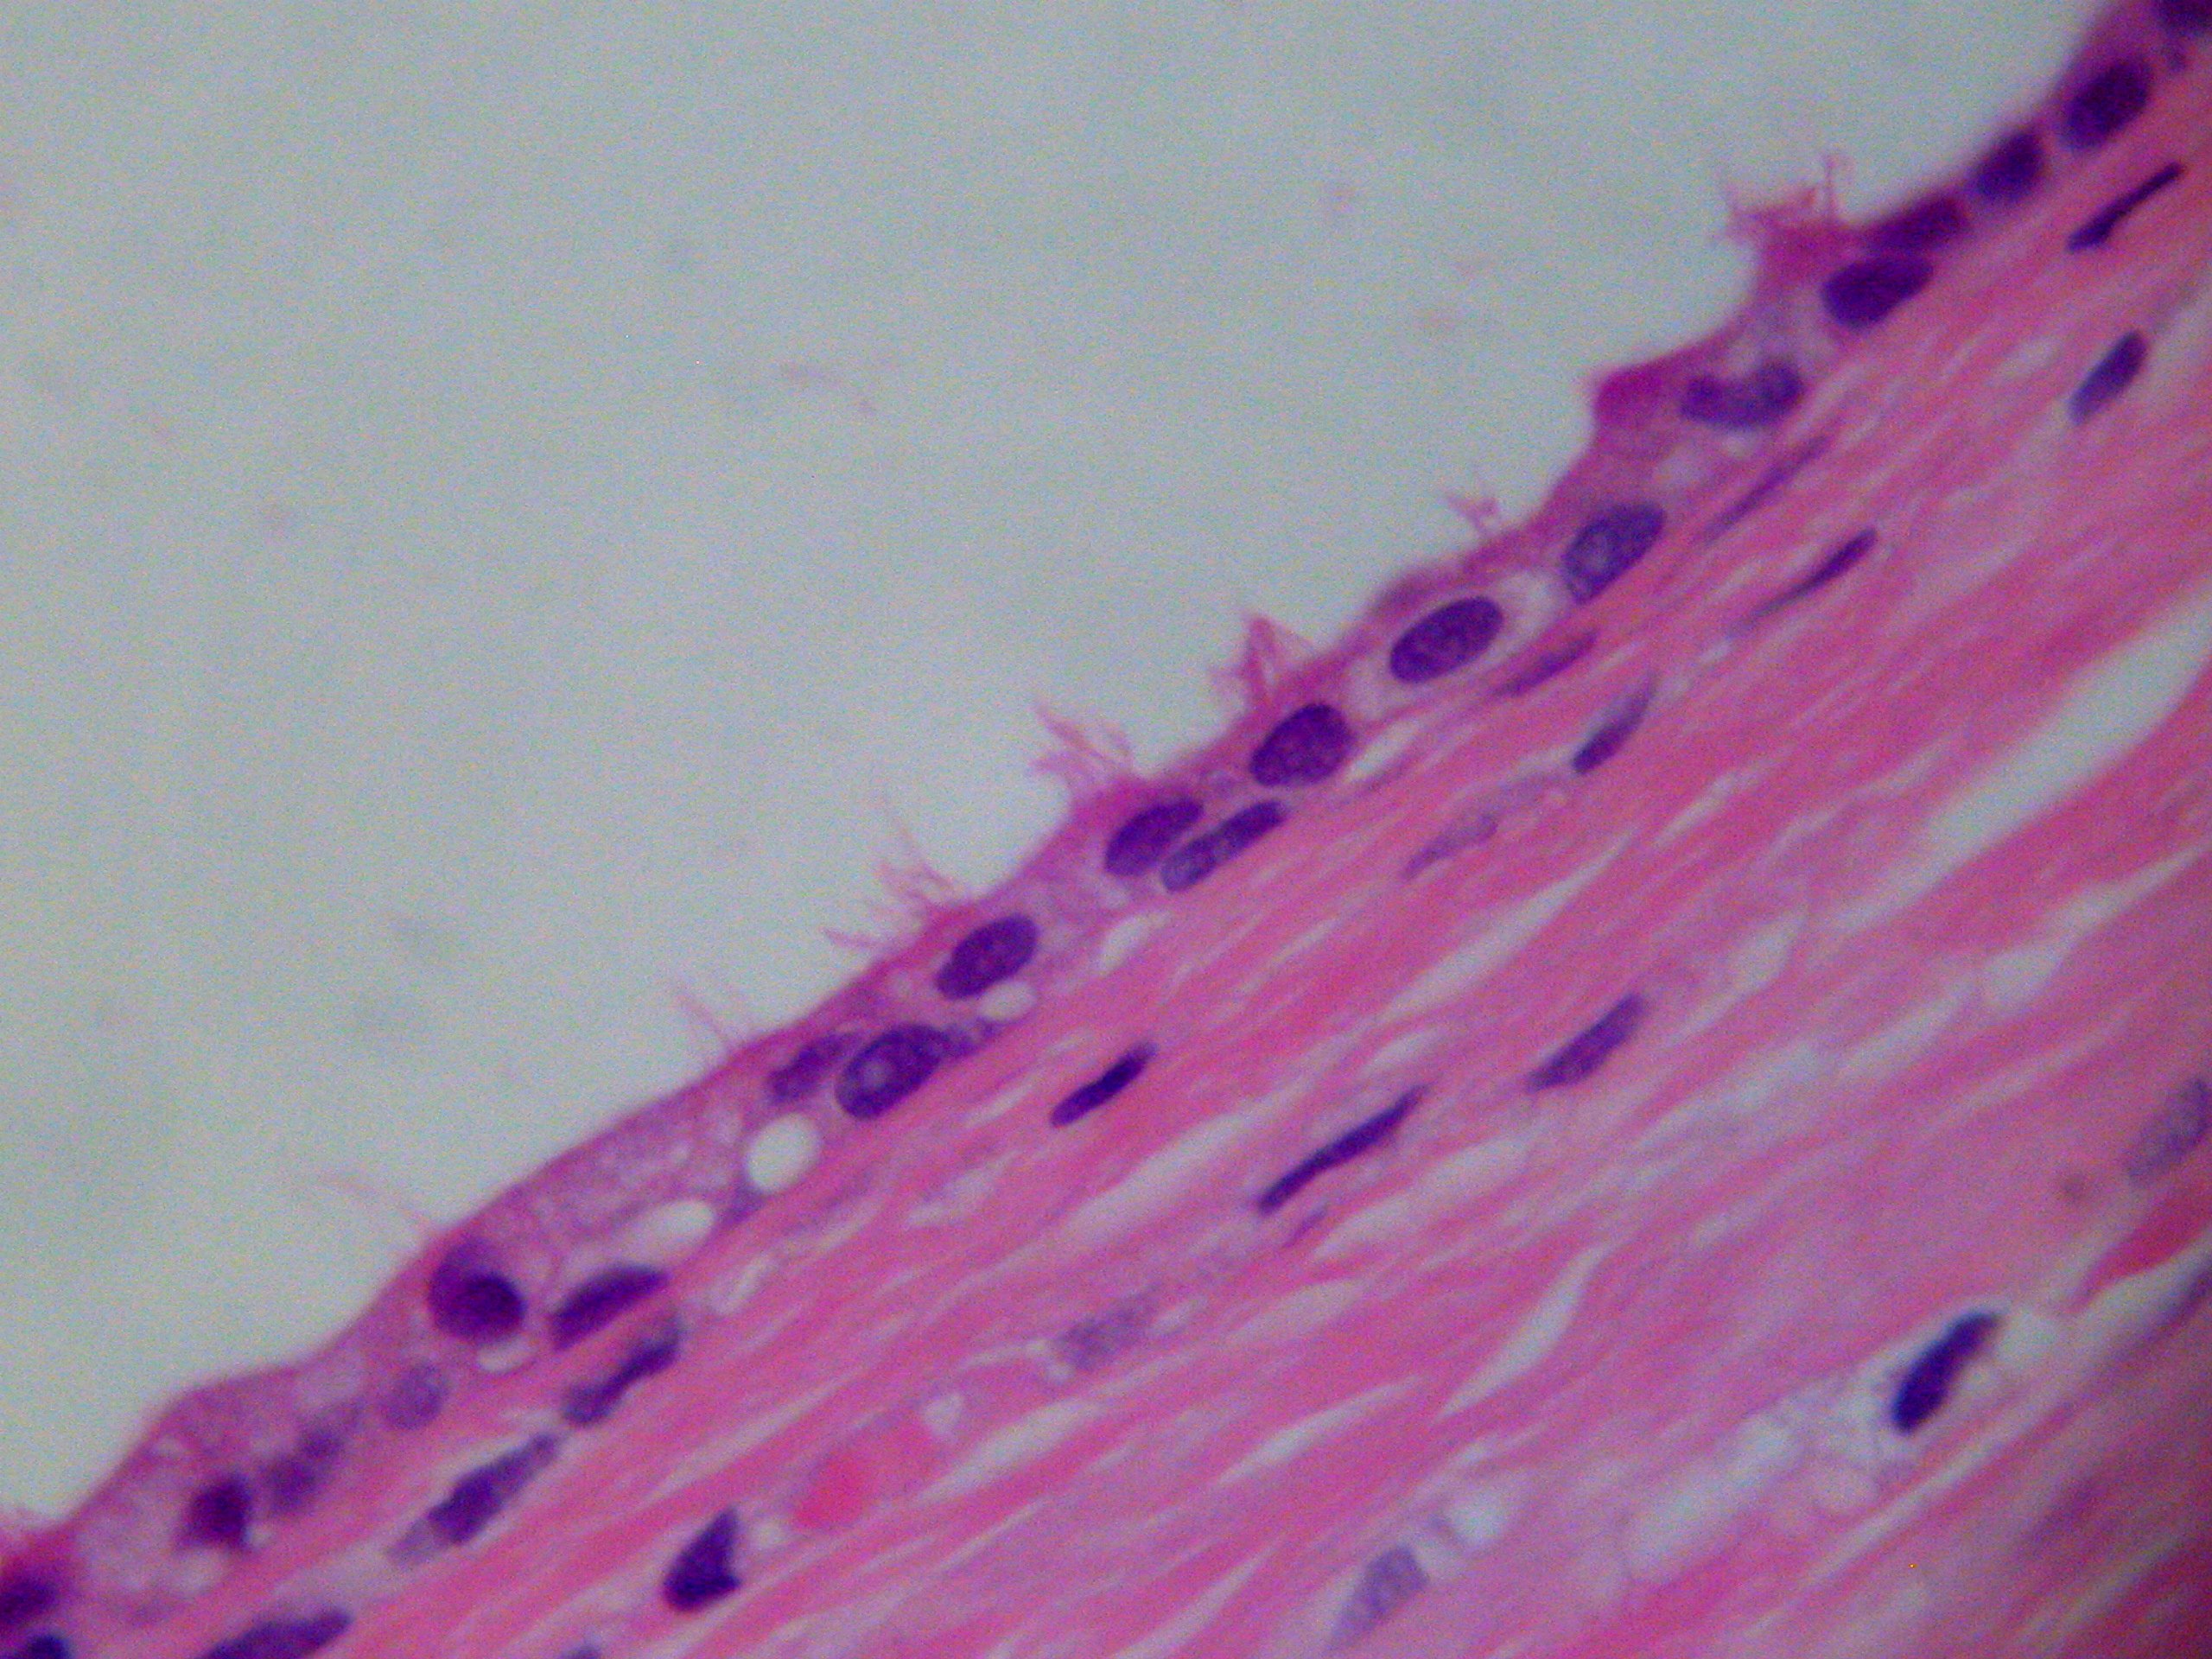 figura 1 - Caso 1.  Detalle del revestimiento epitelial con clulas ciliadas